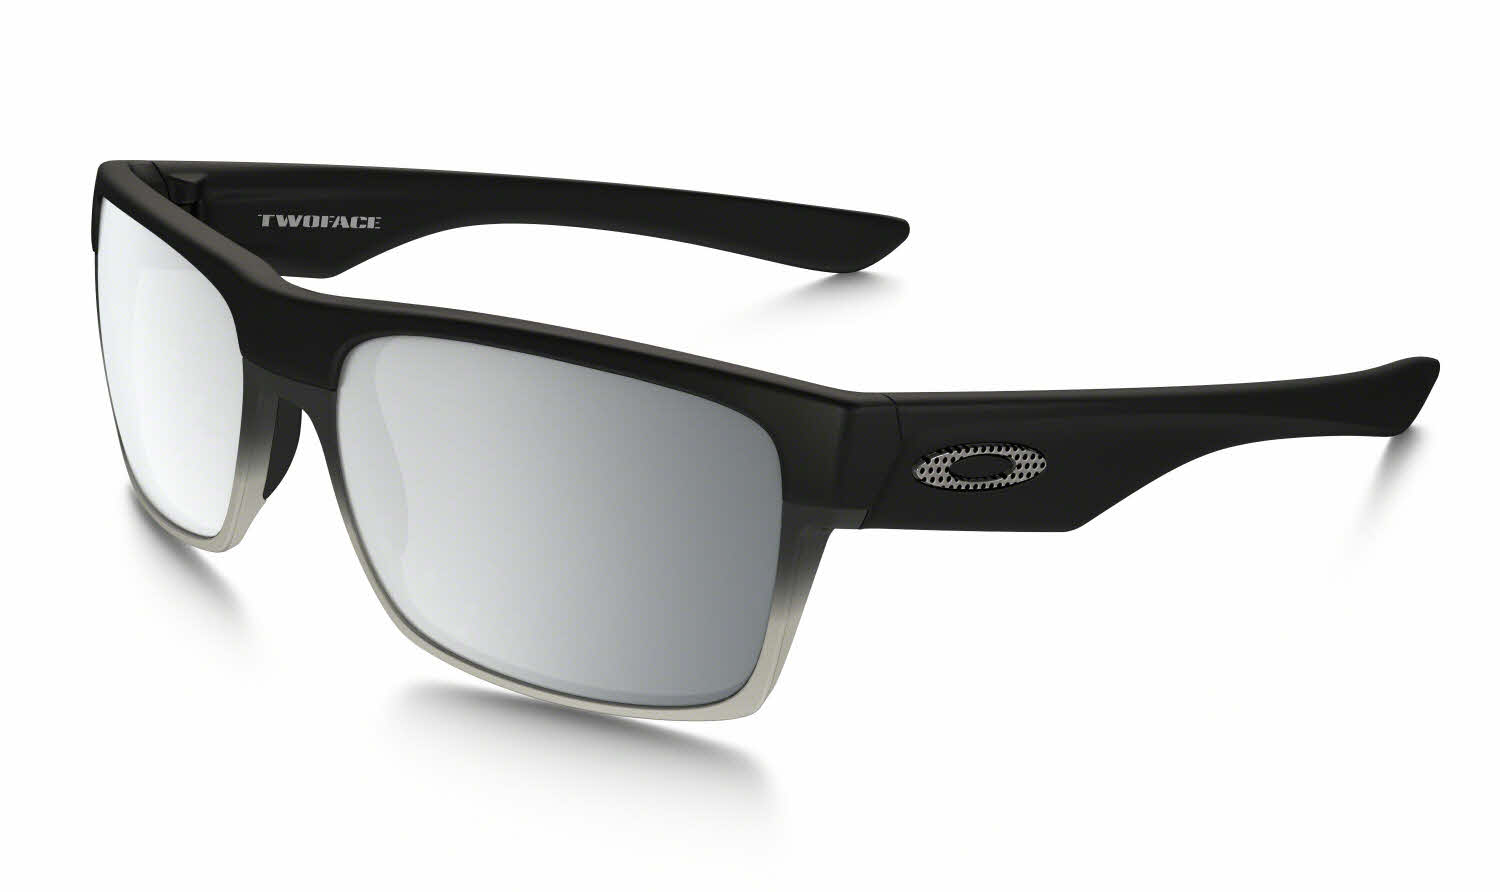 Brain Dead x Oakley Factory Team Sunglasses Release Date | Hypebeast